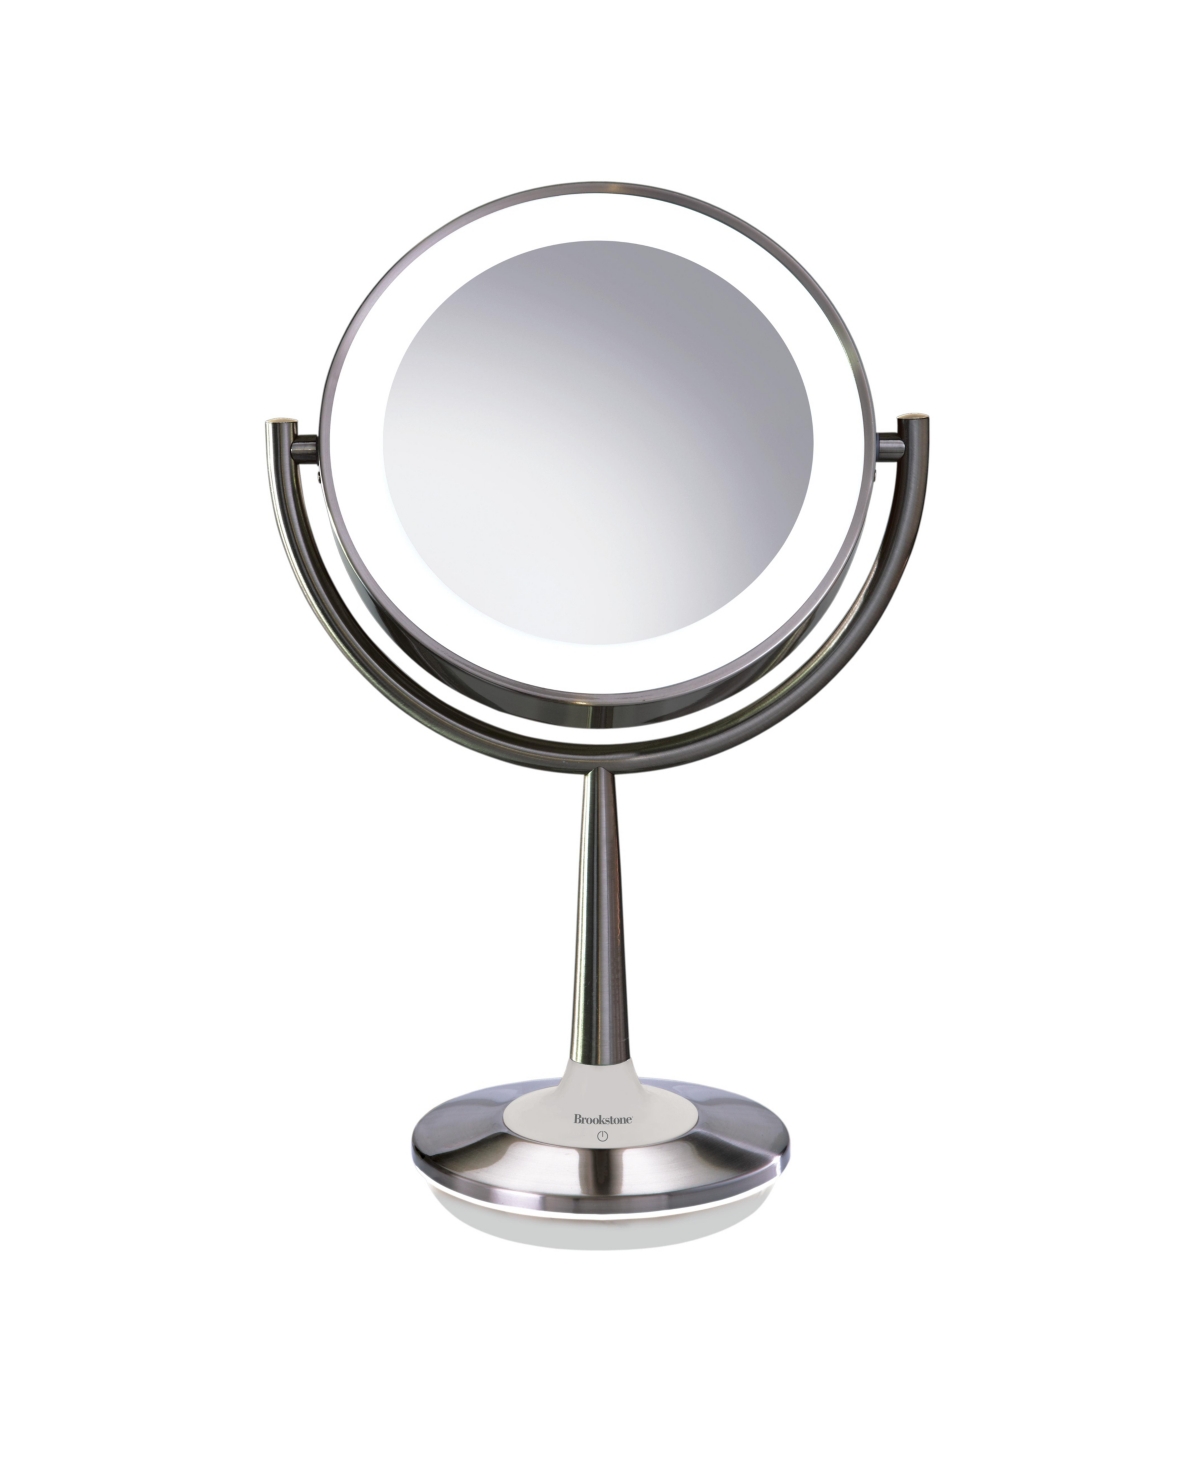 Brookstone Cordless Illuminated Makeup Mirror